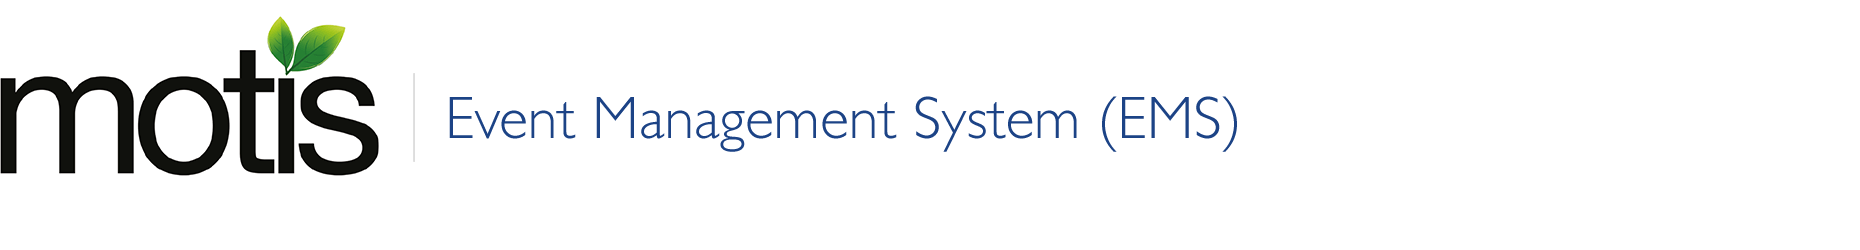 MotisCo Event Management System (EMS)